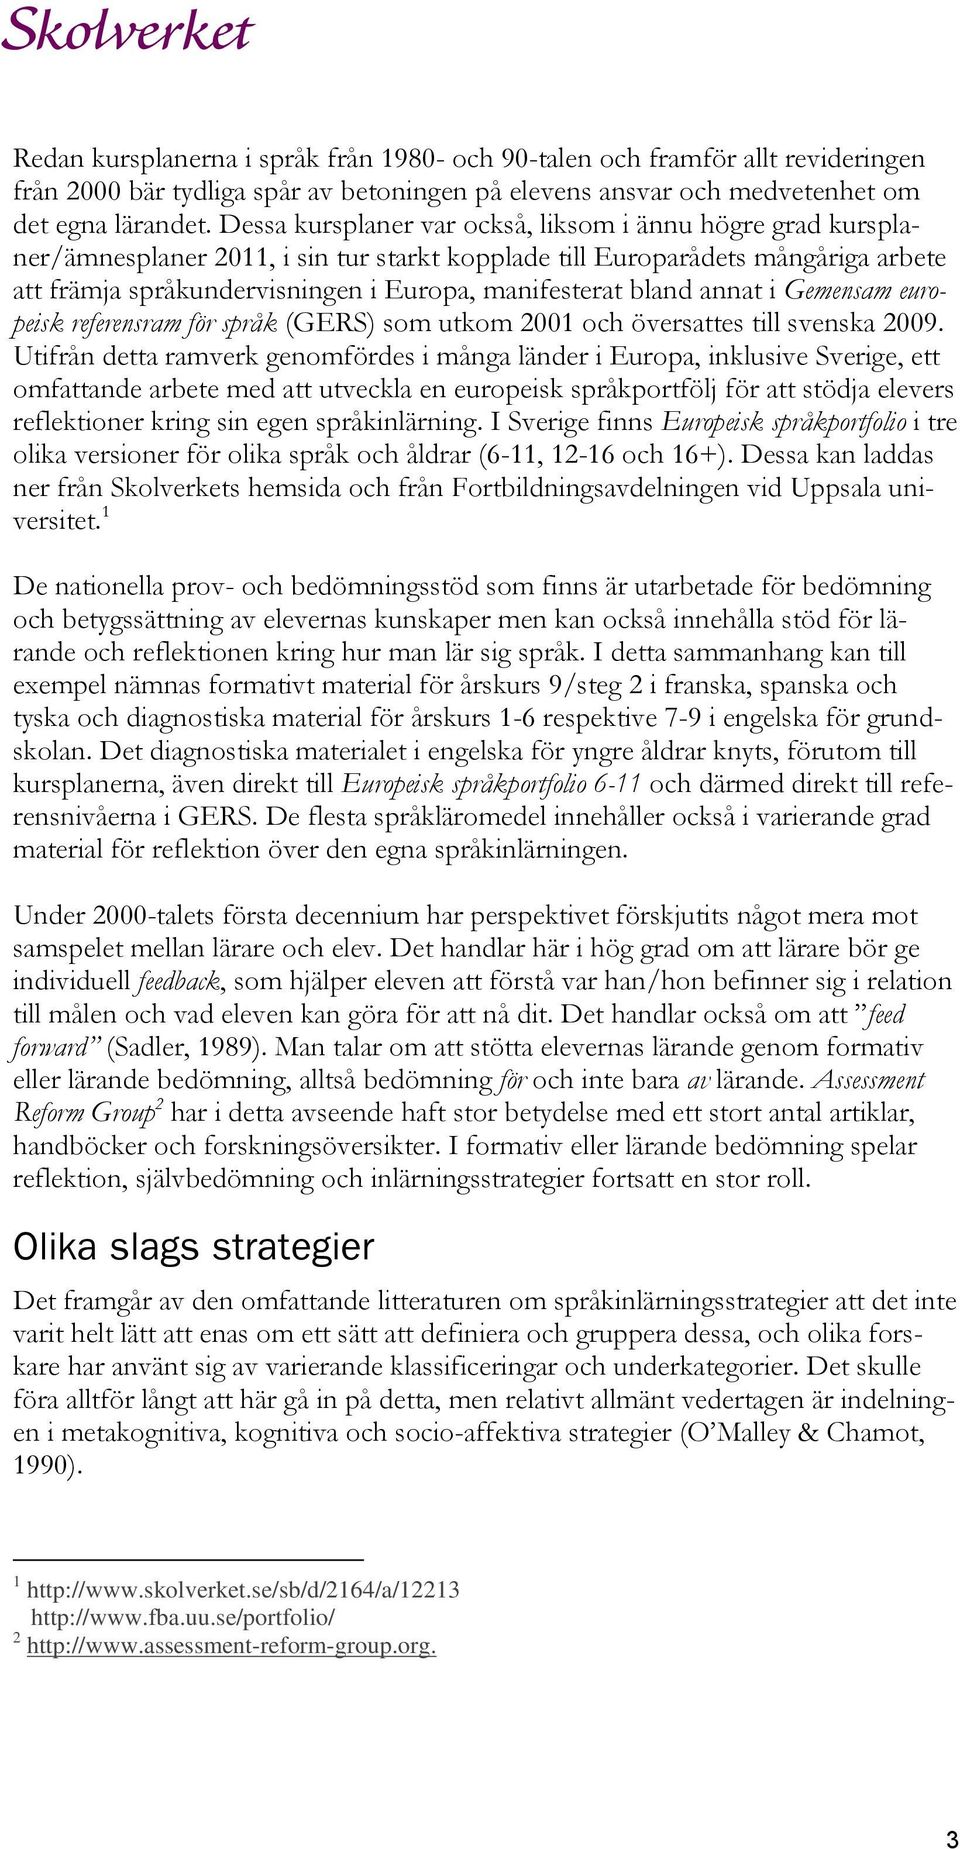 bland annat i Gemensam europeisk referensram för språk (GERS) som utkom 2001 och översattes till svenska 2009.